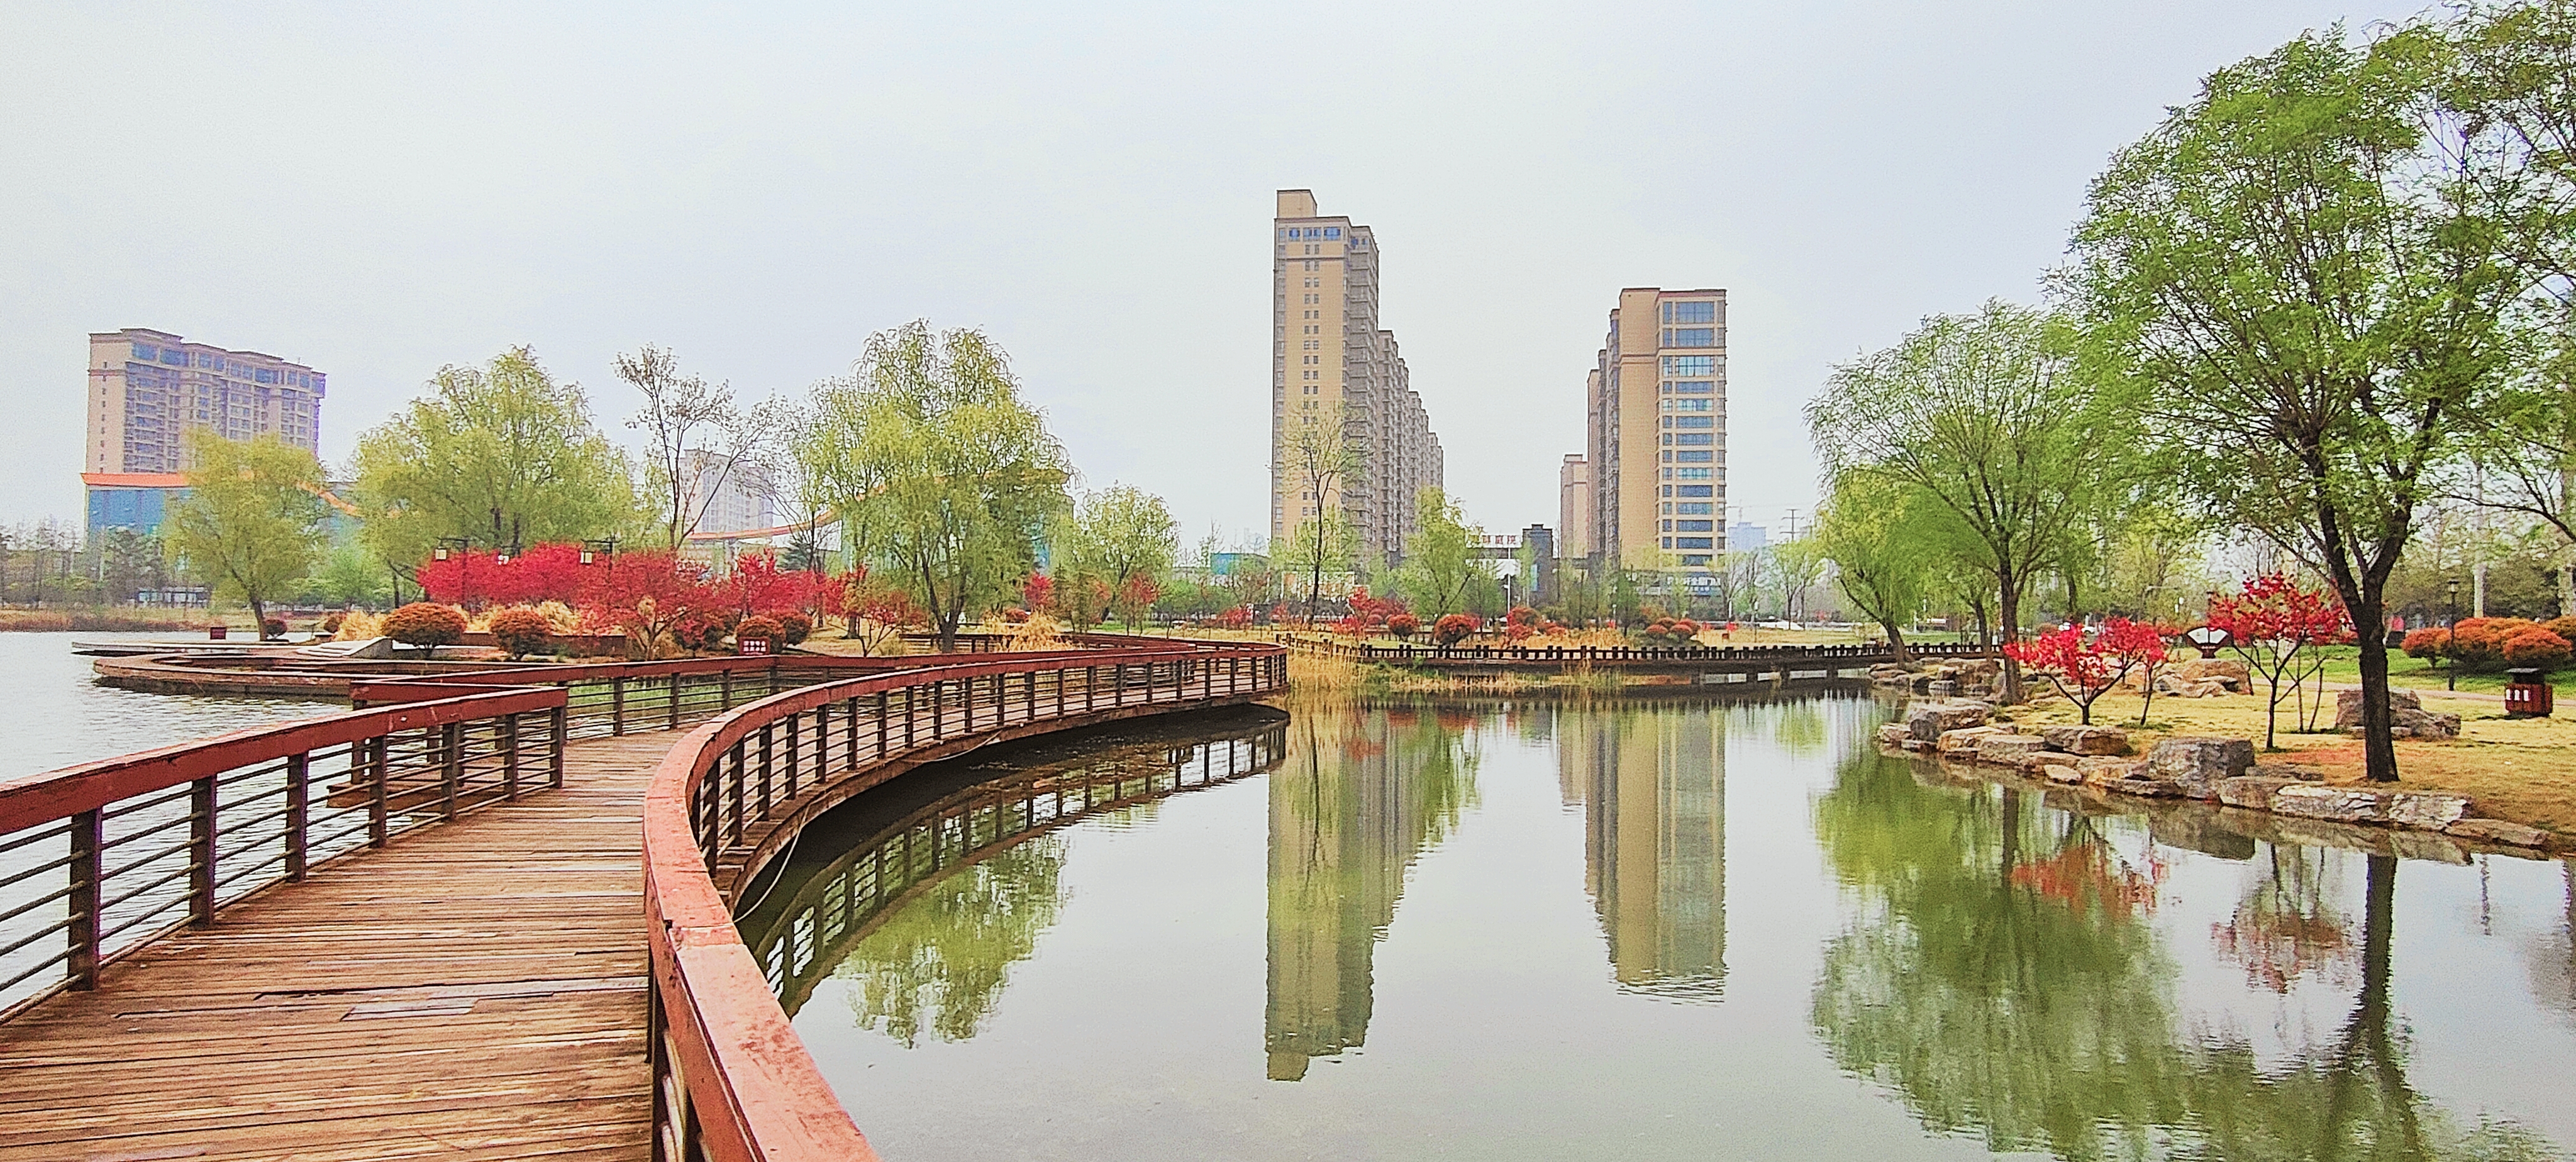 拍摄时间:2024年4月2日拍摄地点:禹州市森林植物园手机随拍:贺景昌